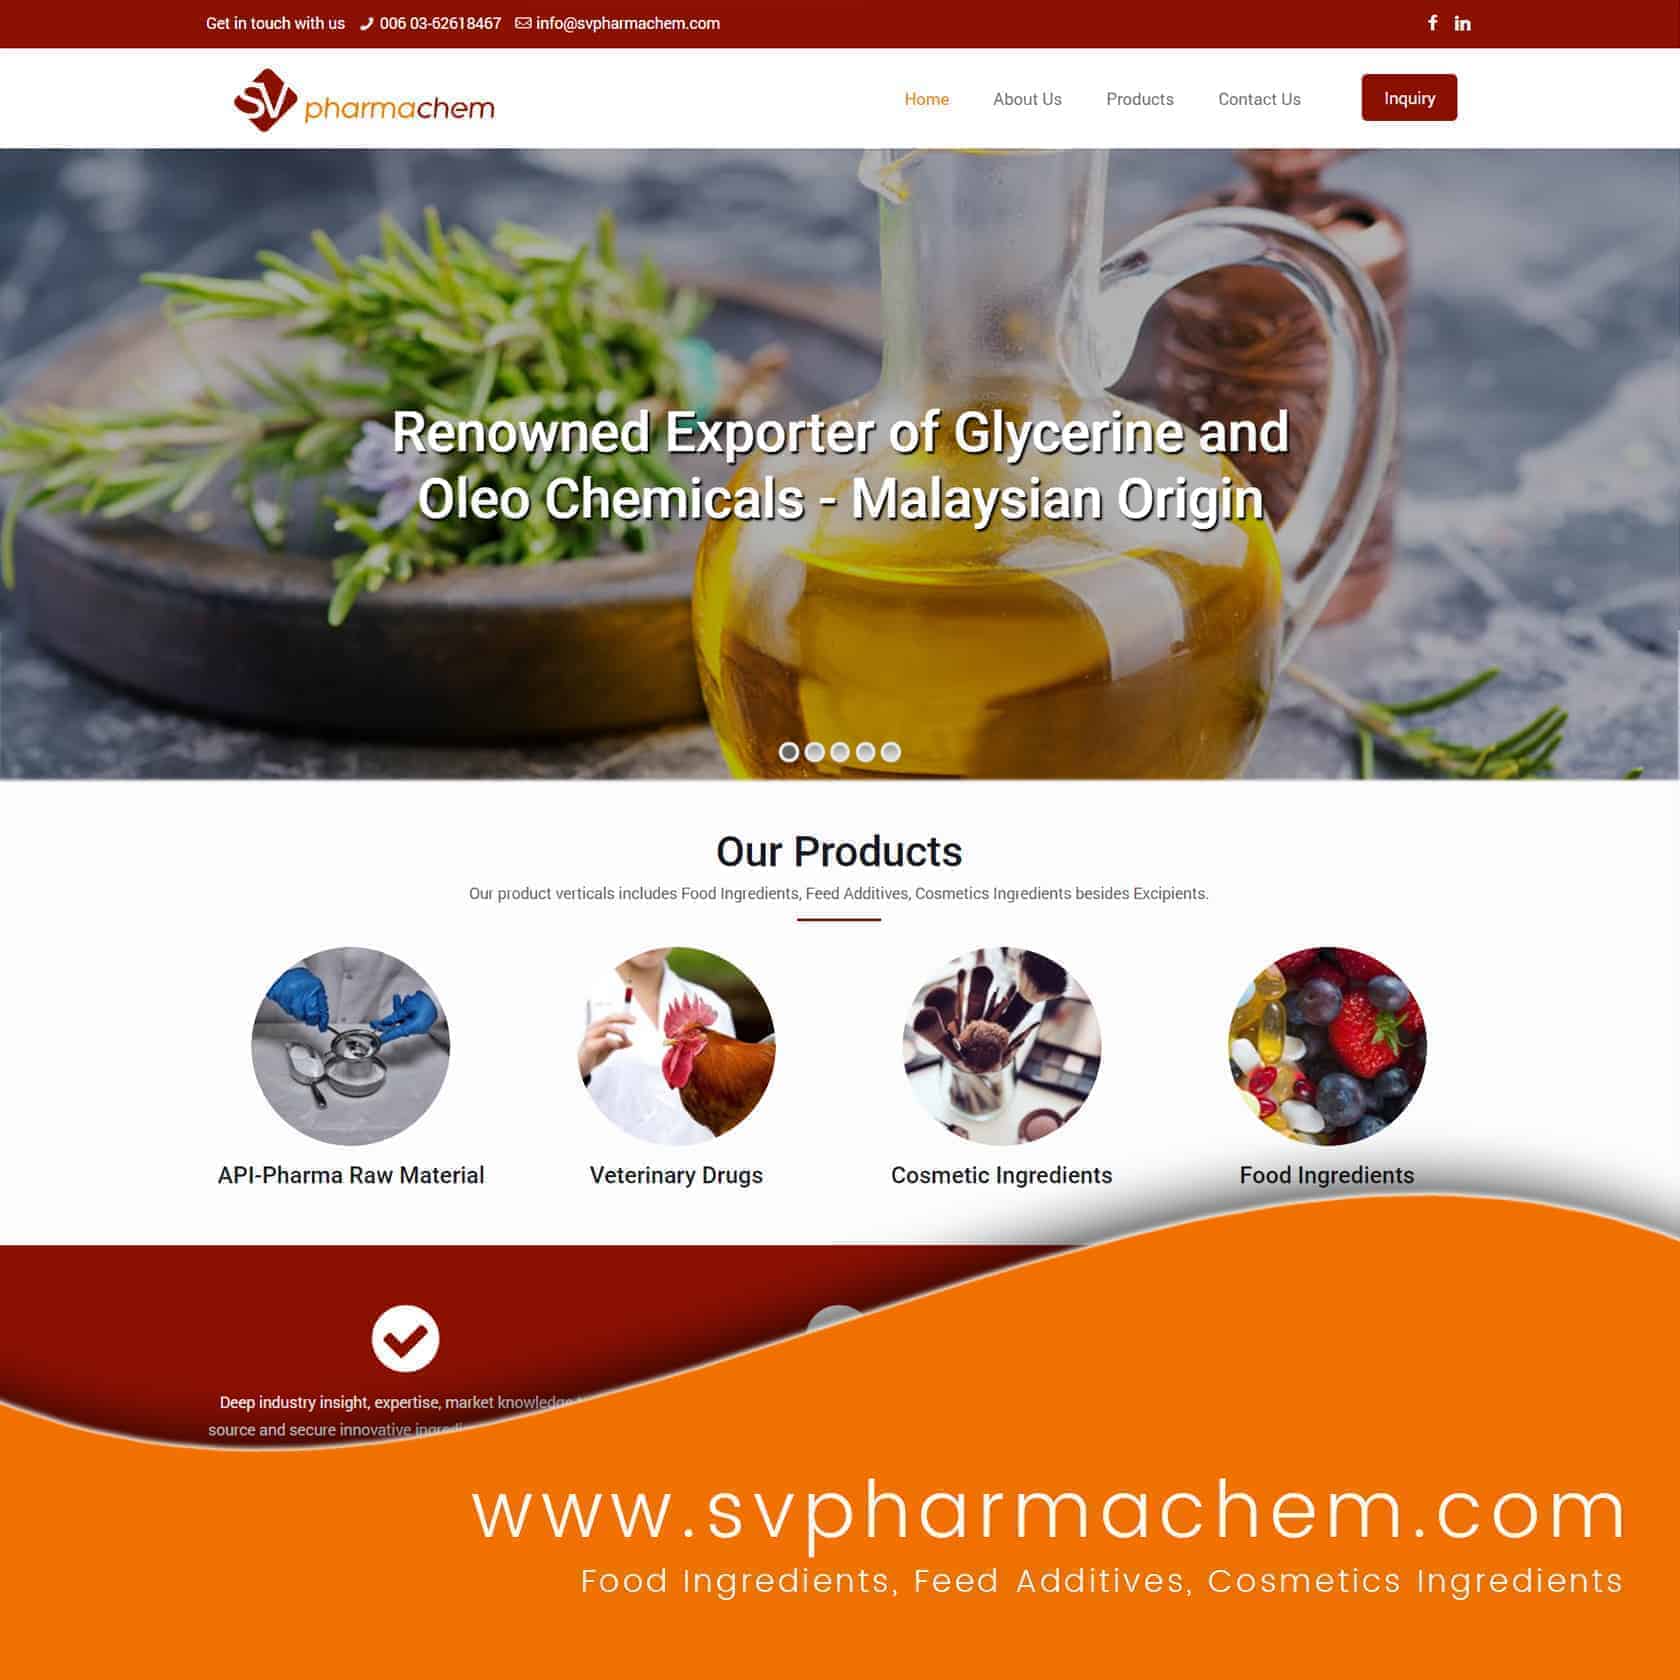 sv pharma chem website